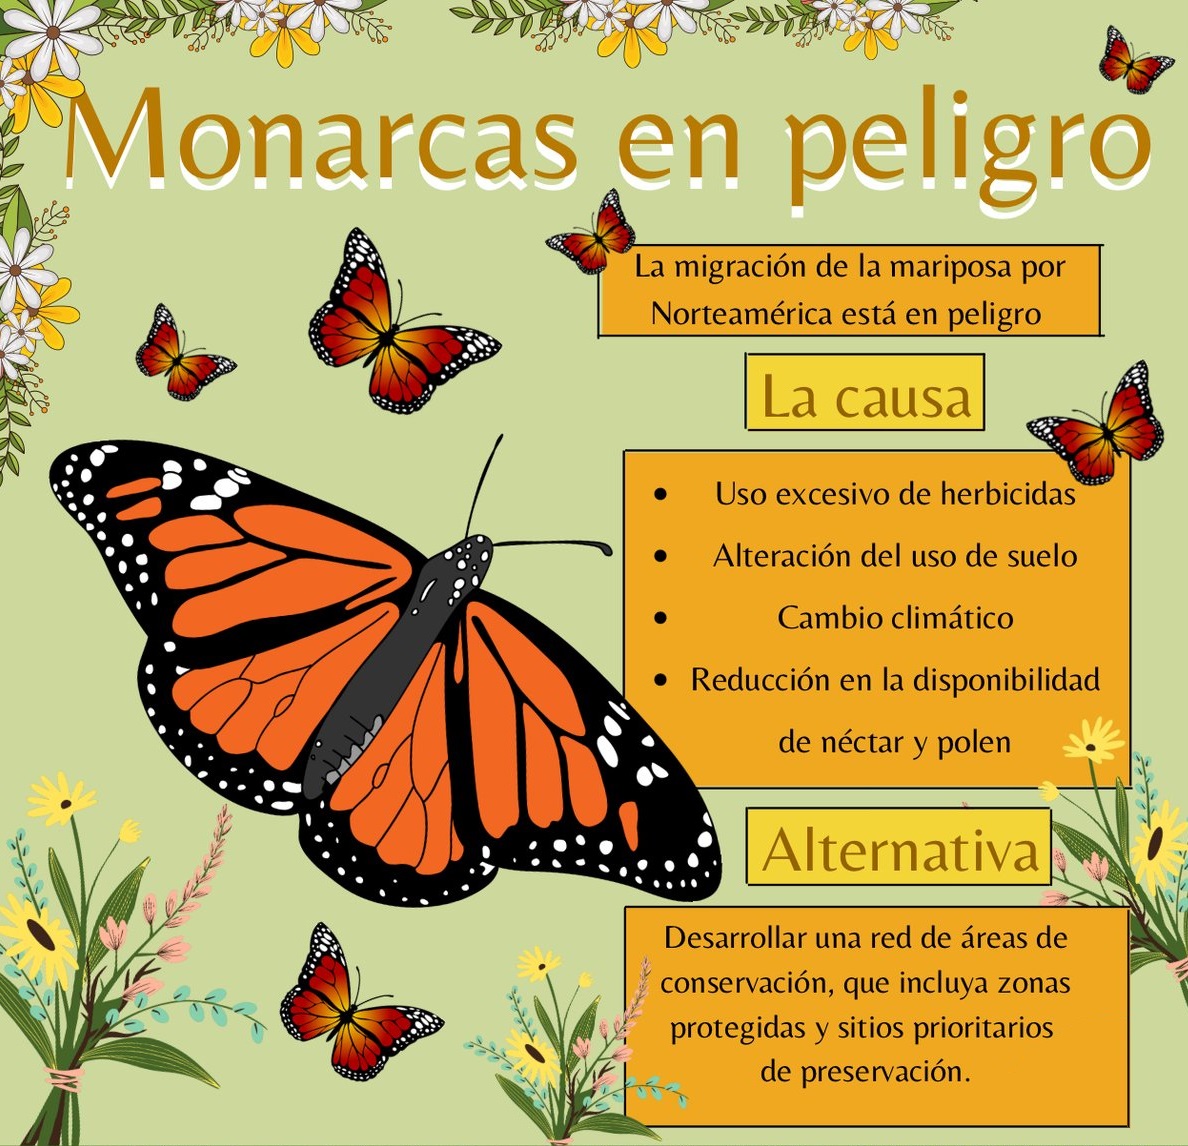 Mariposa monarca entra a lista roja de especies en peligro